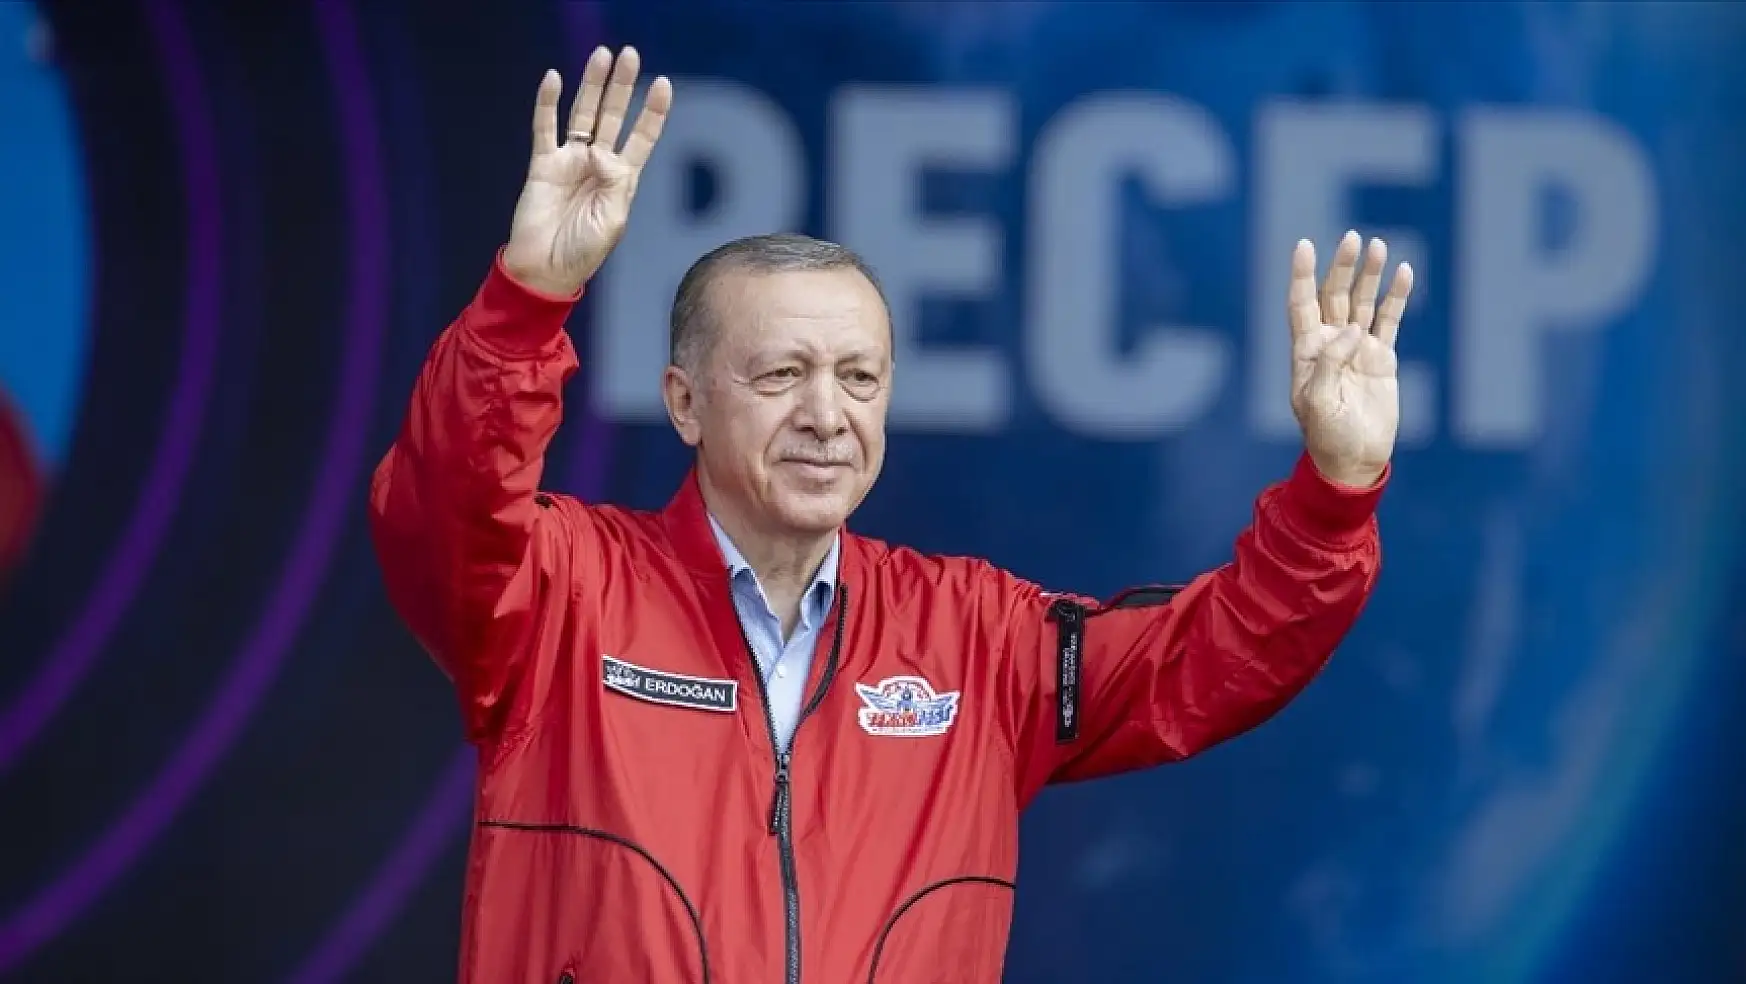 Cumhurbaşkanı Erdoğan: Yunanistan'a tek cümlemiz var, İzmir'i unutma